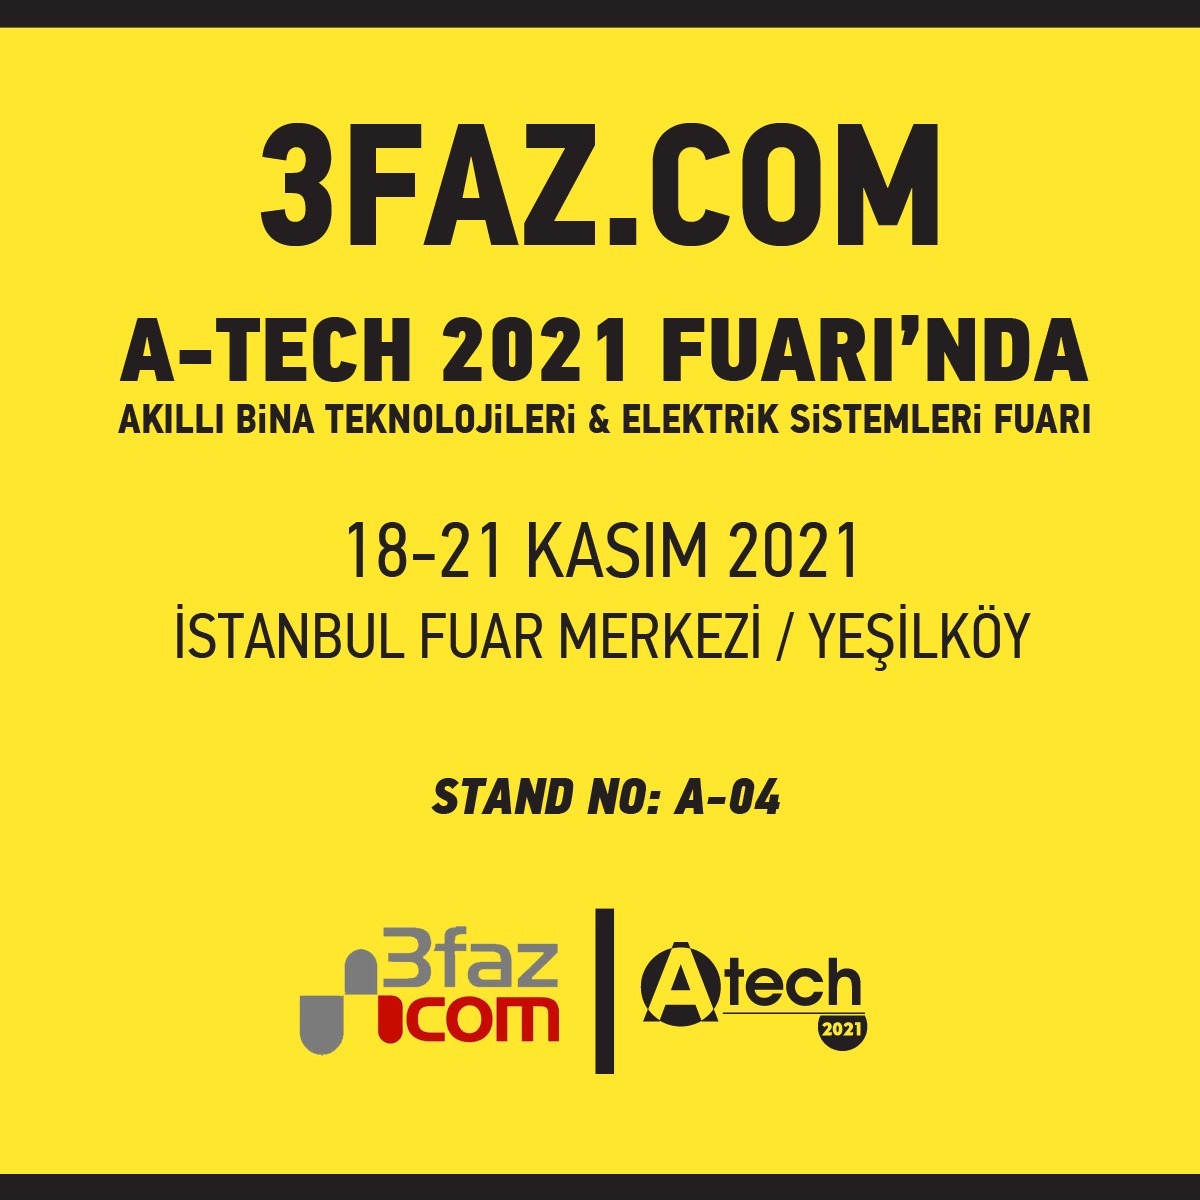 Yeni yılda yeni tanıtım organizasyonlarındayız. #fuar #atech2021 #3faz